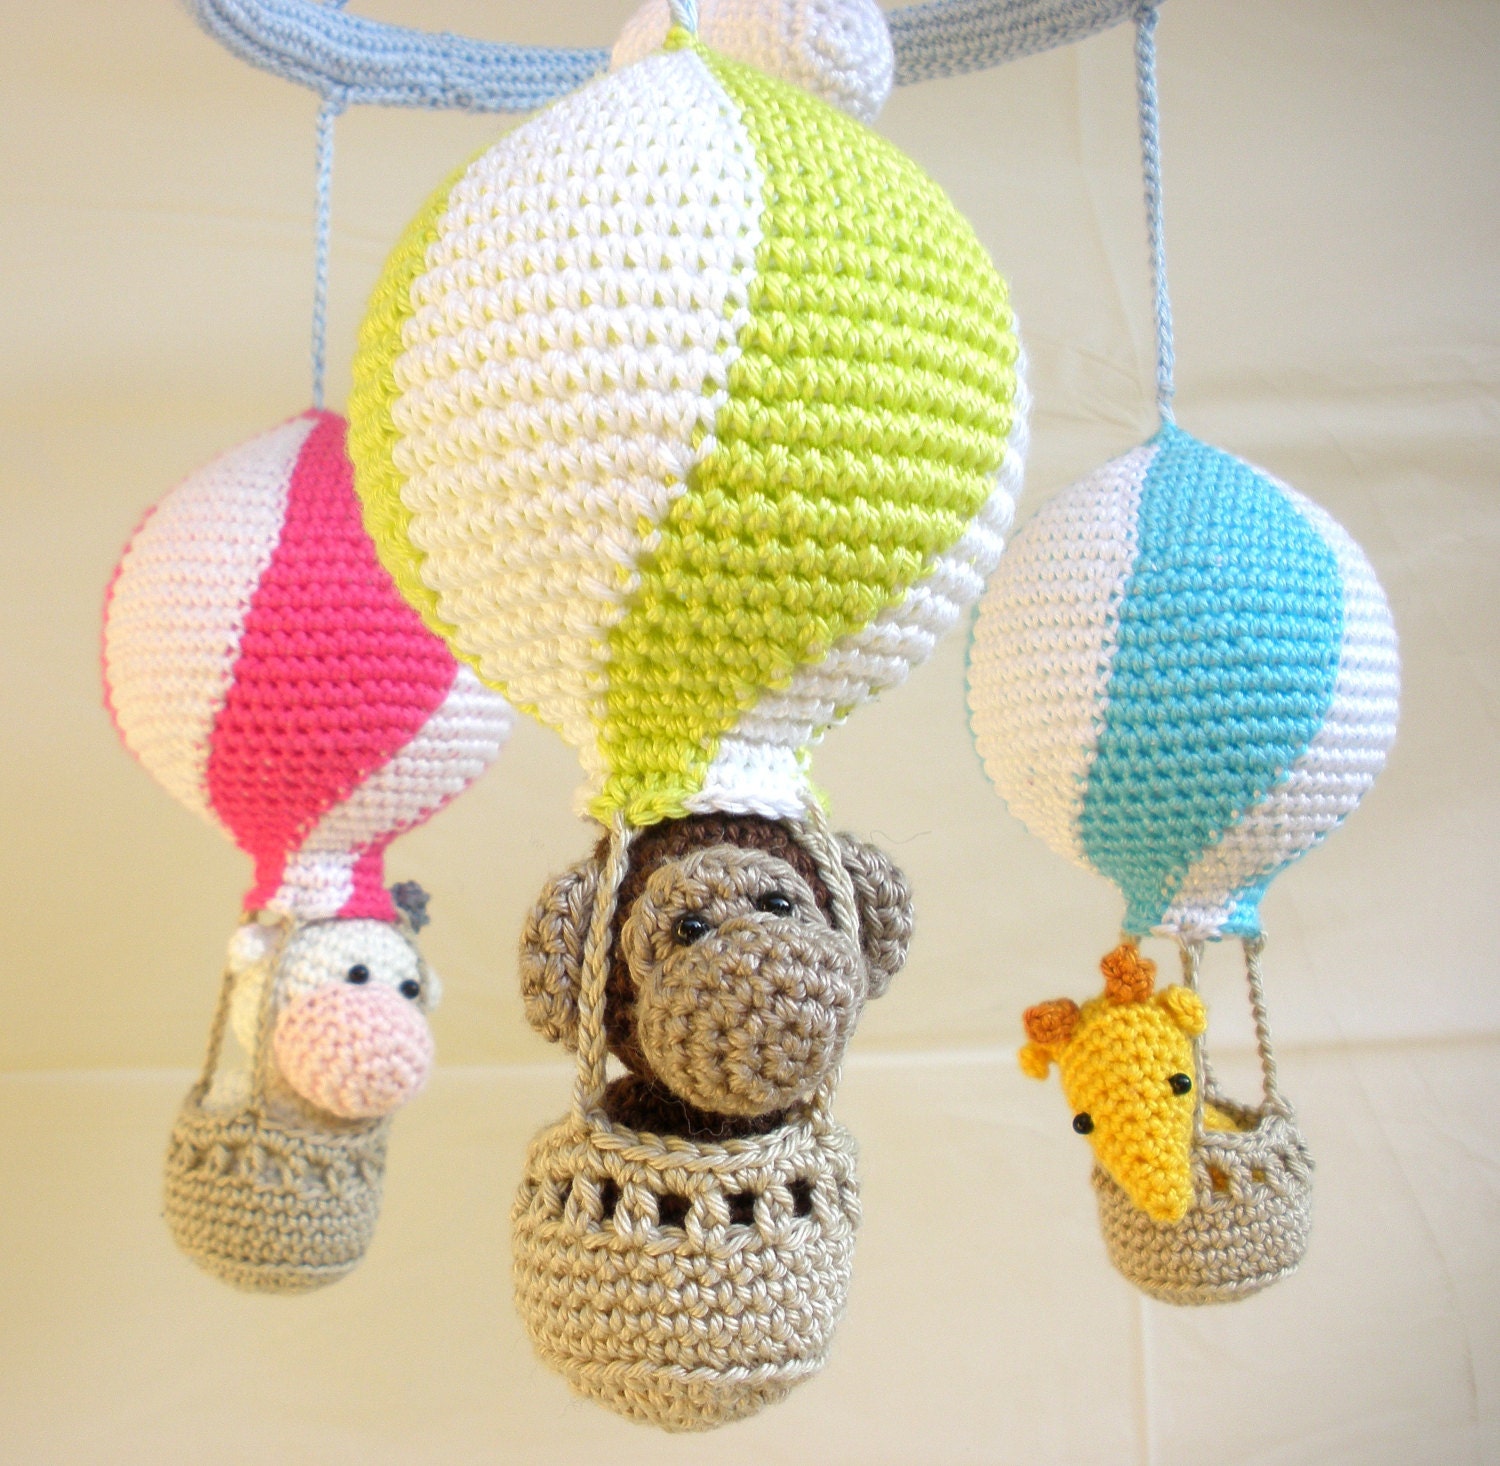 Hot air balloon mobile - Crochet mobile - Nursery mobile - Nursery furniture - Baby mobile hot air balloon - Hot air balloon